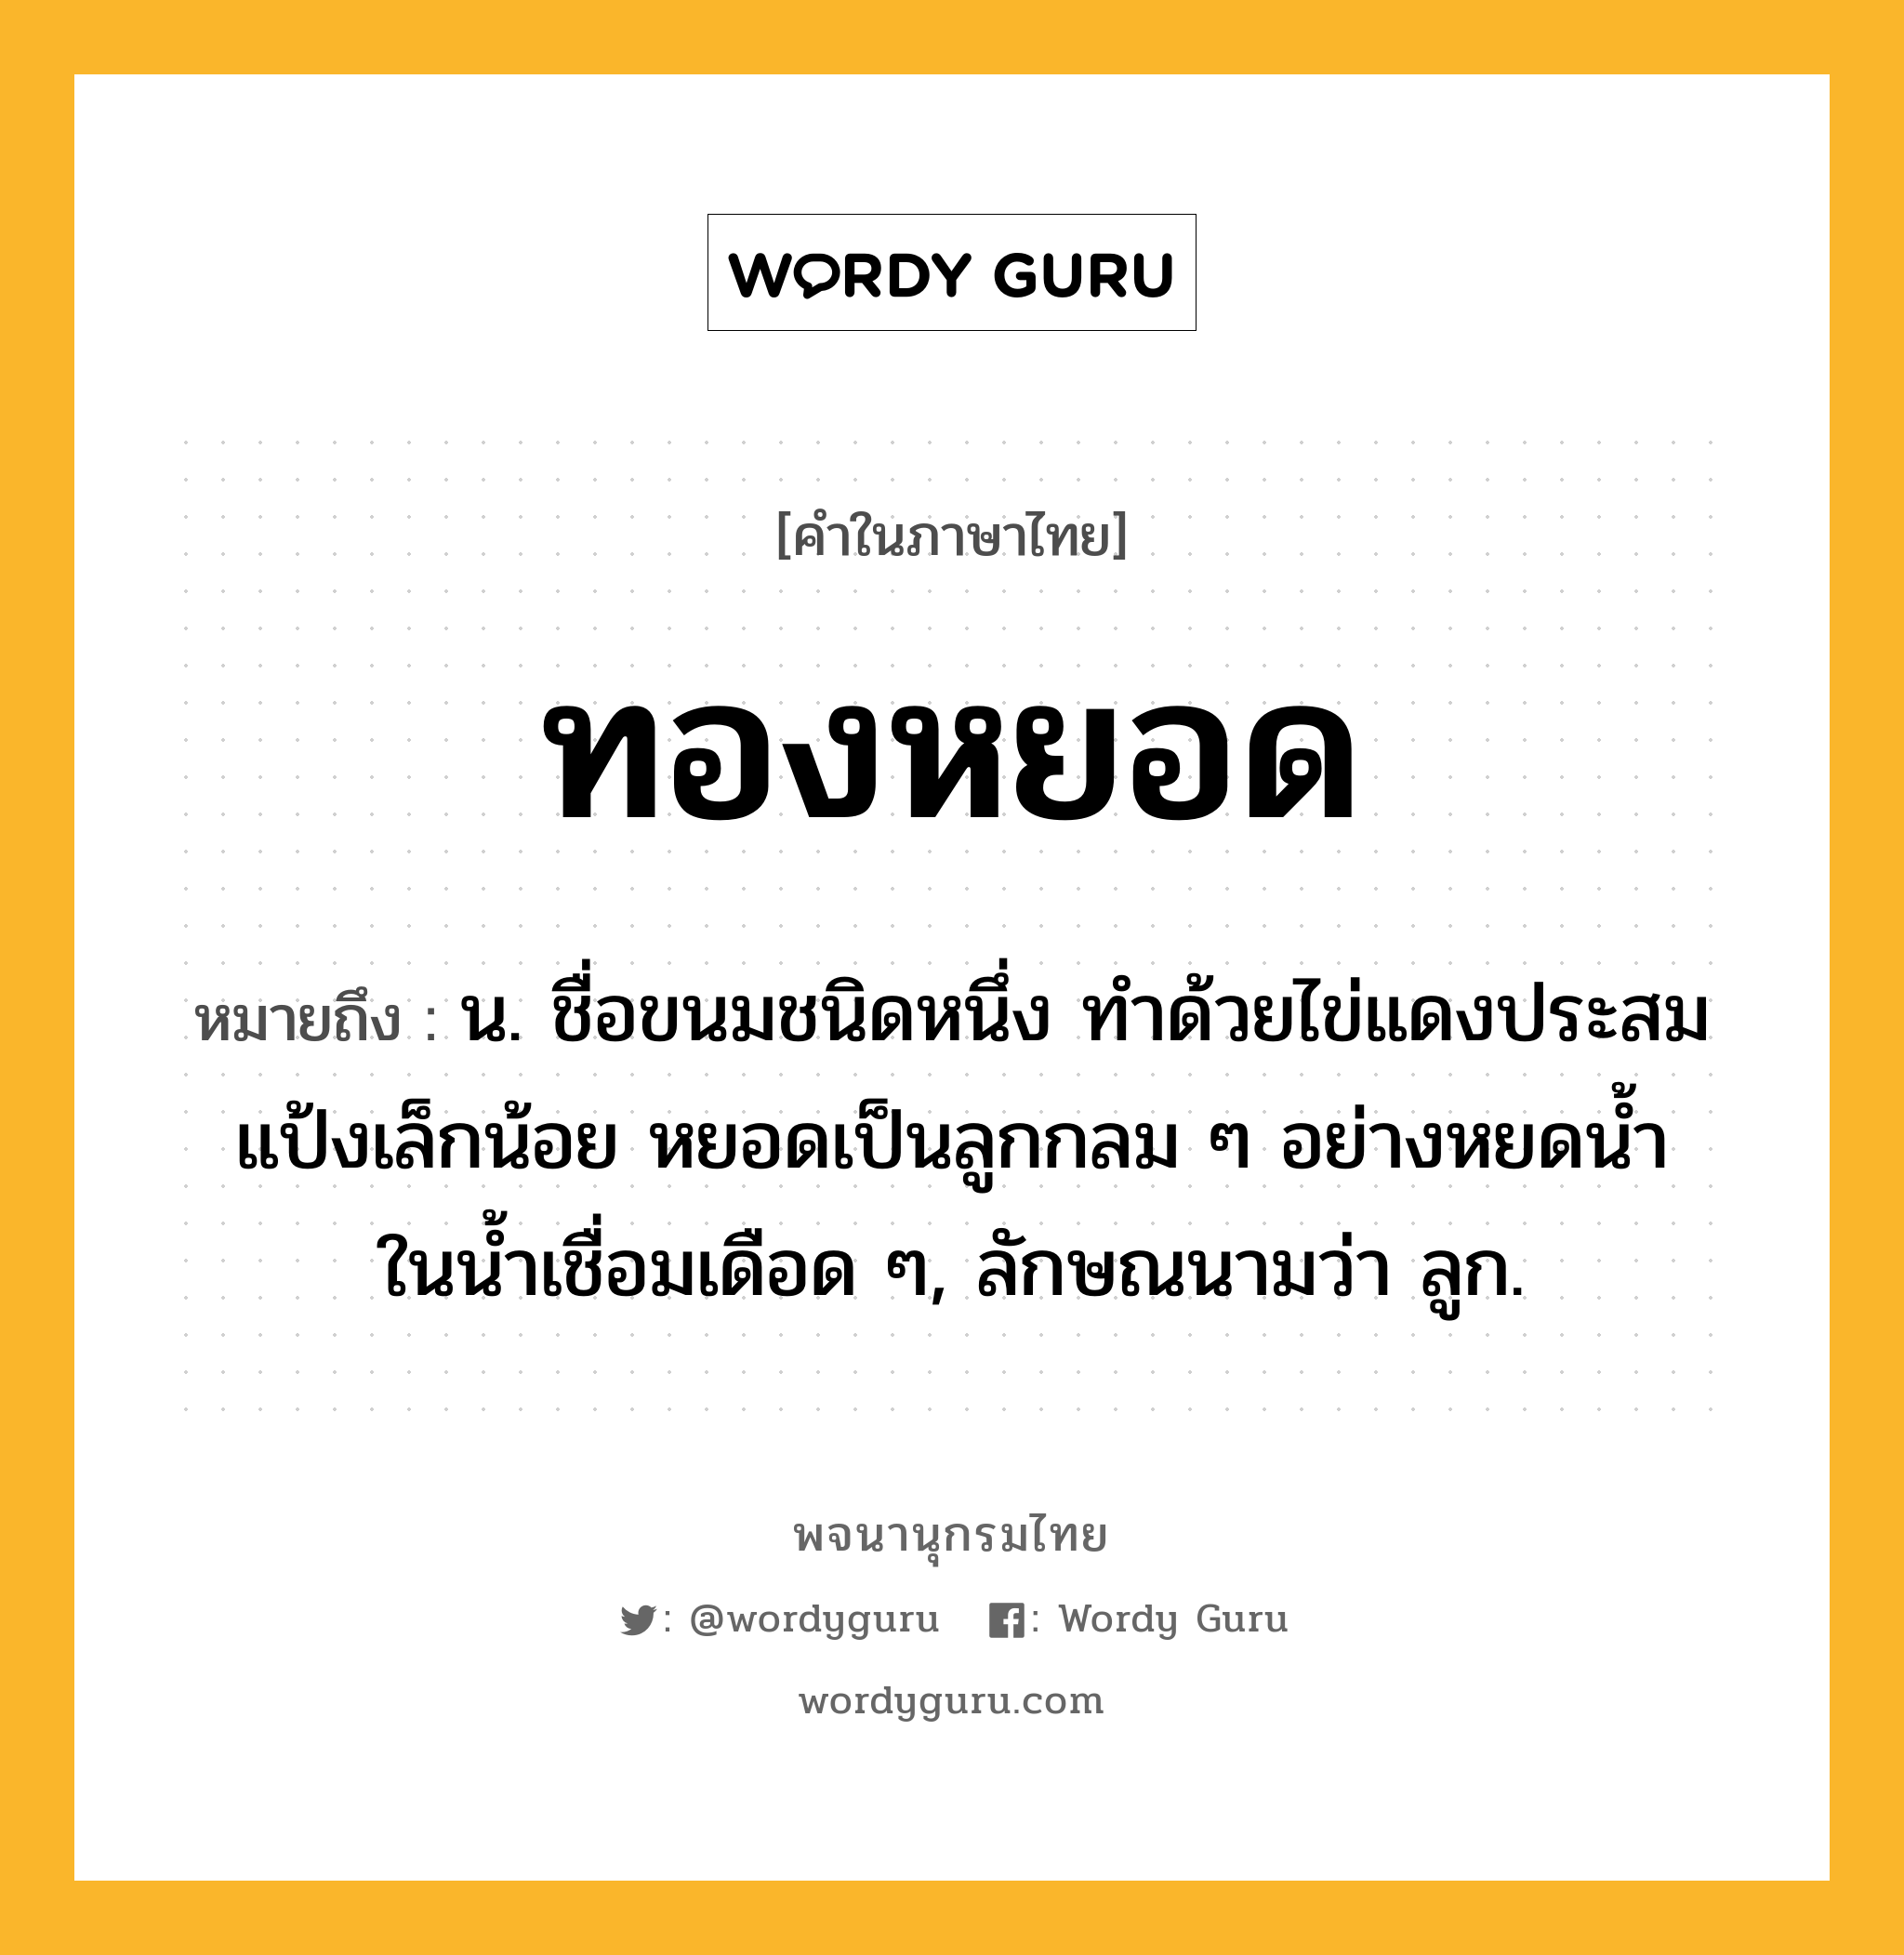 ทองหยอด ความหมาย หมายถึงอะไร?, คำในภาษาไทย ทองหยอด หมายถึง น. ชื่อขนมชนิดหนึ่ง ทําด้วยไข่แดงประสมแป้งเล็กน้อย หยอดเป็นลูกกลม ๆ อย่างหยดนํ้าในนํ้าเชื่อมเดือด ๆ, ลักษณนามว่า ลูก.